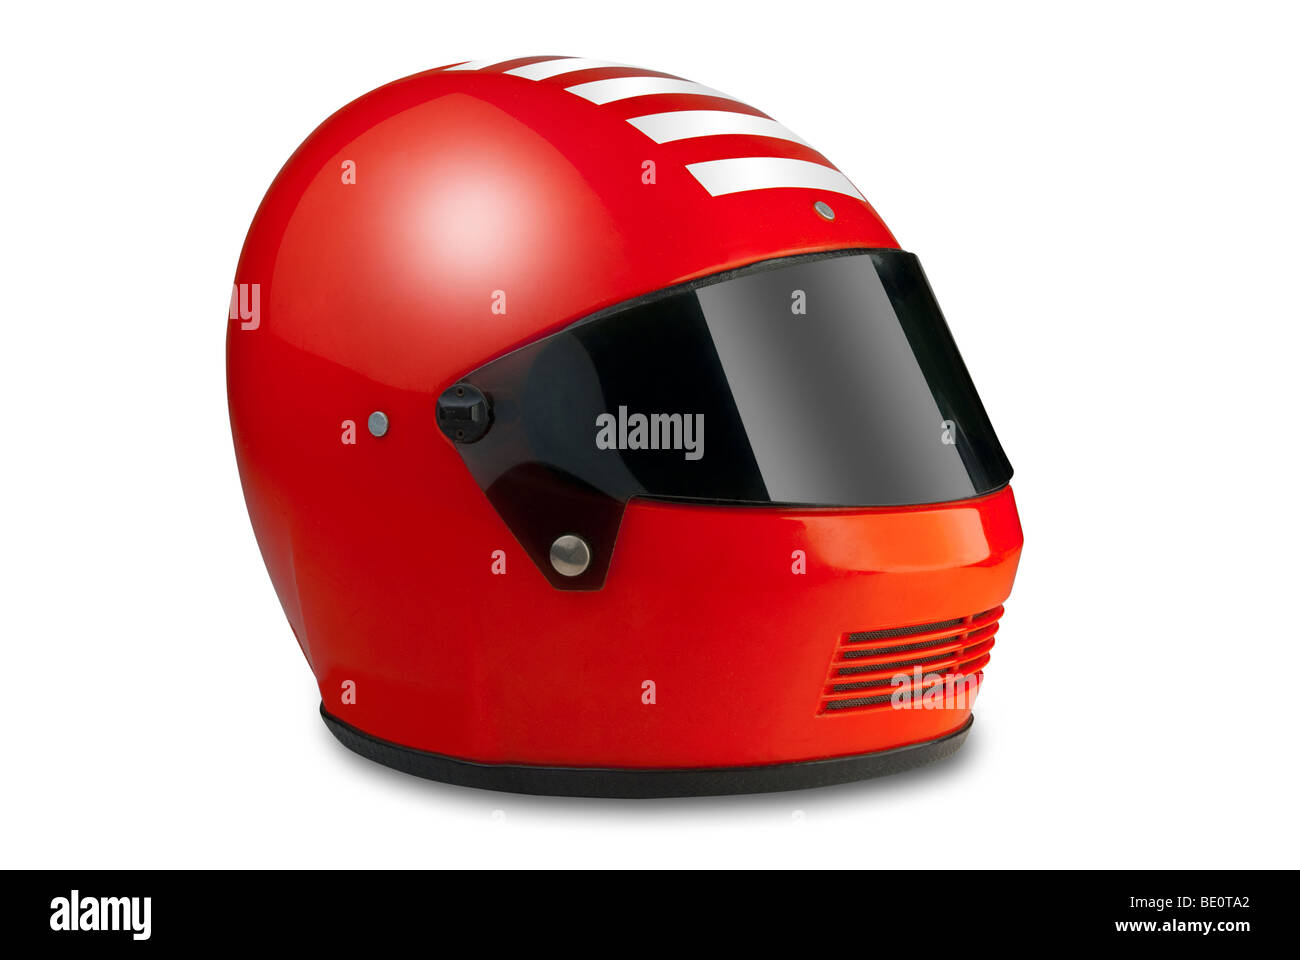 Red motor sport racing helmet Stock Photo